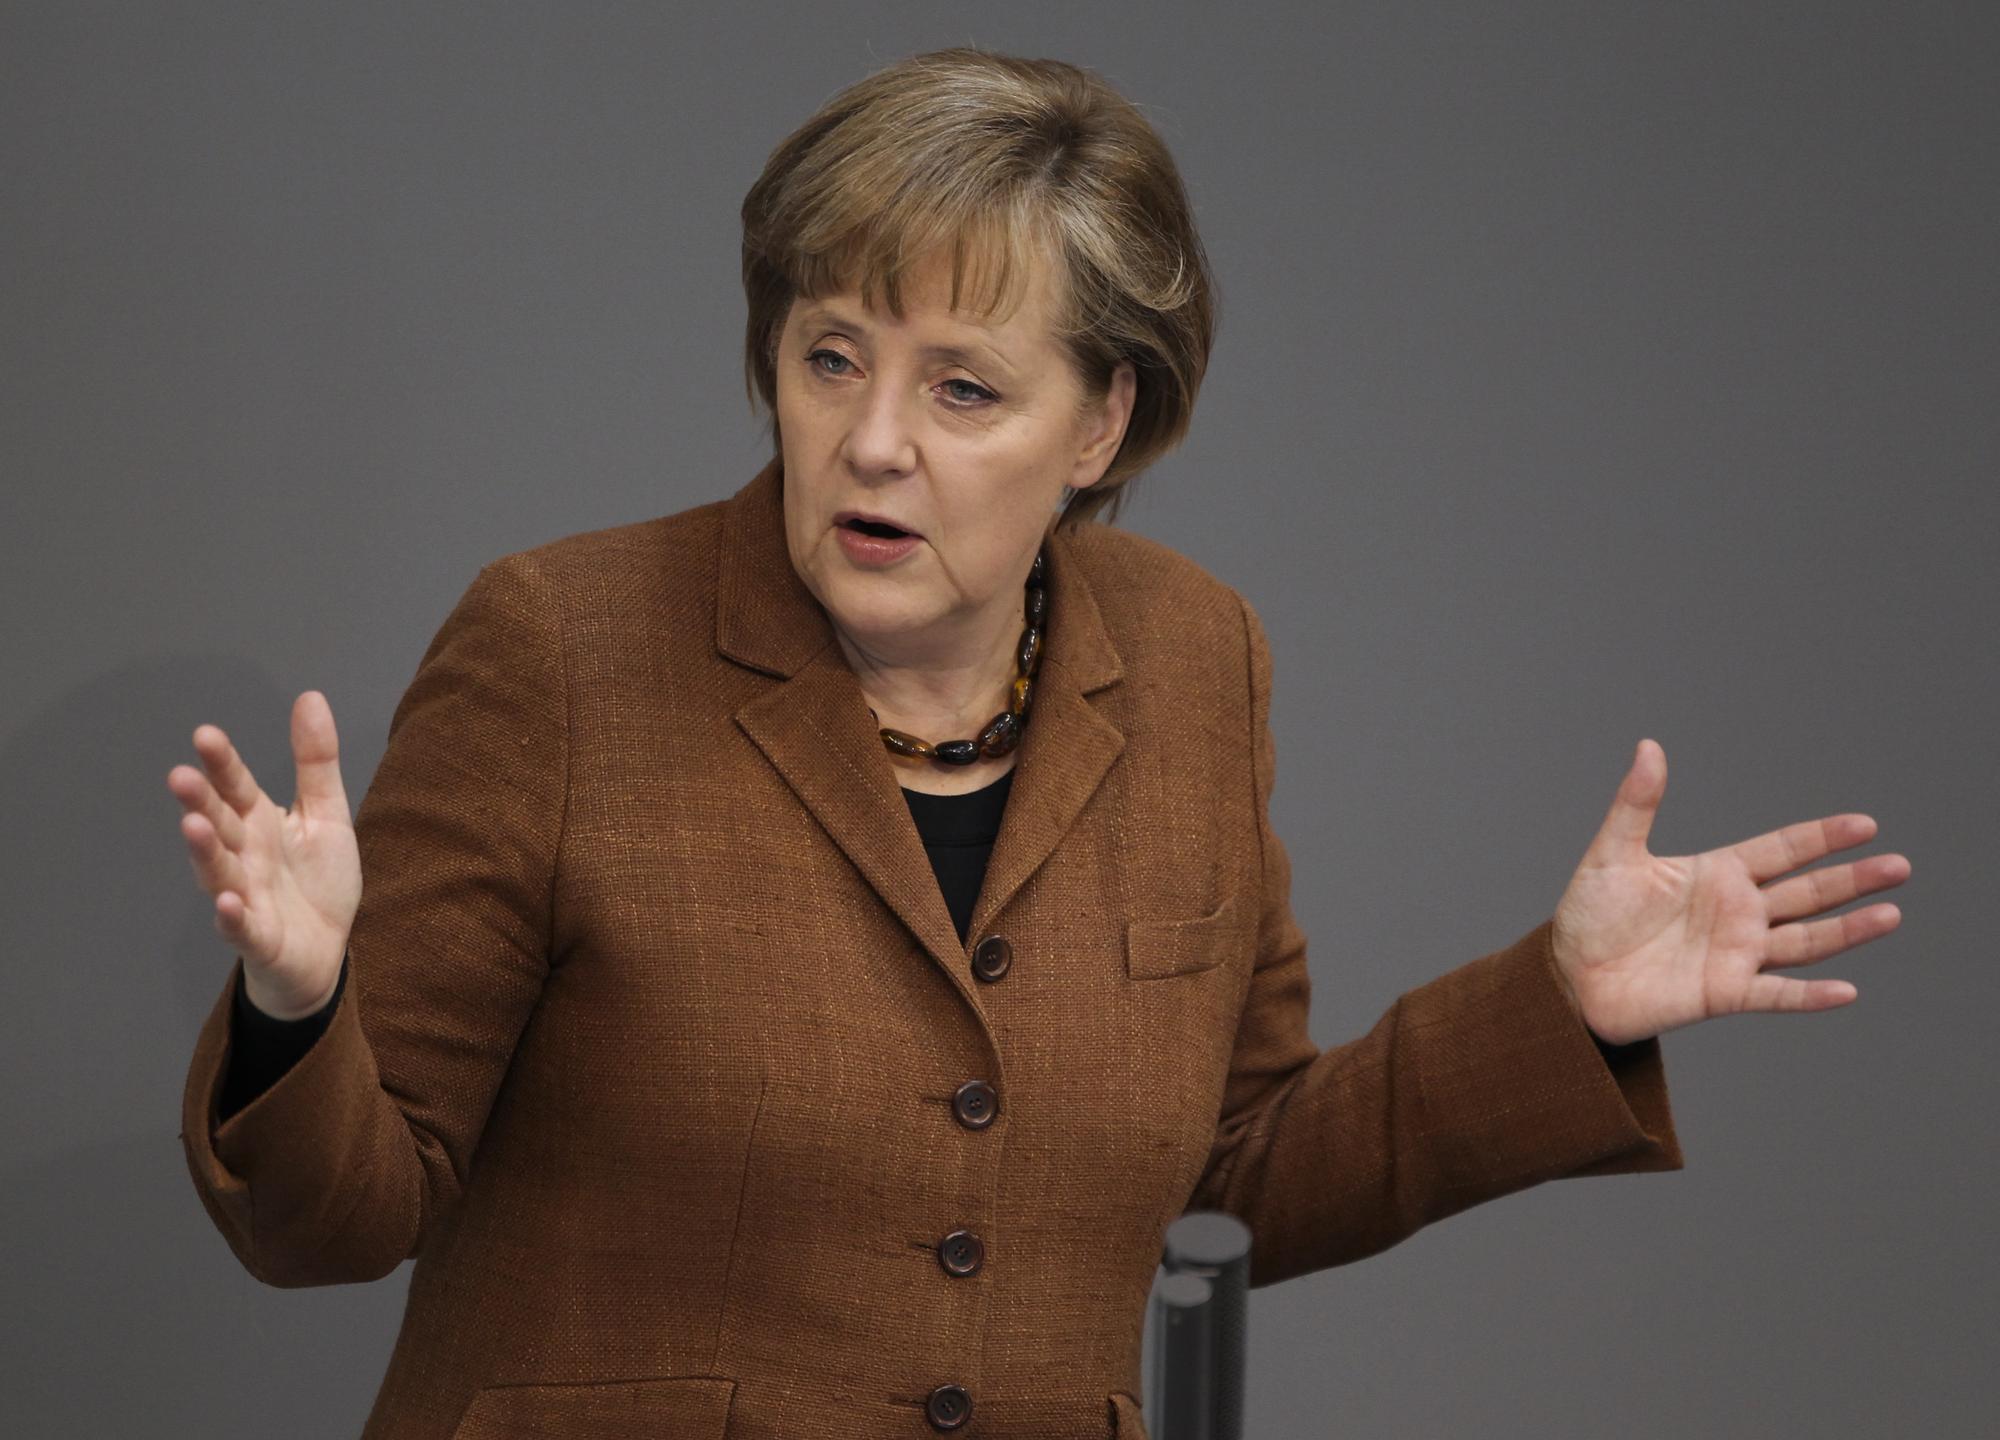 Le revirement d'Angela Merkel sur le nucléaire a été perçu comme une manoeuvre politique par les citoyens. [Fabrizio Bensch]